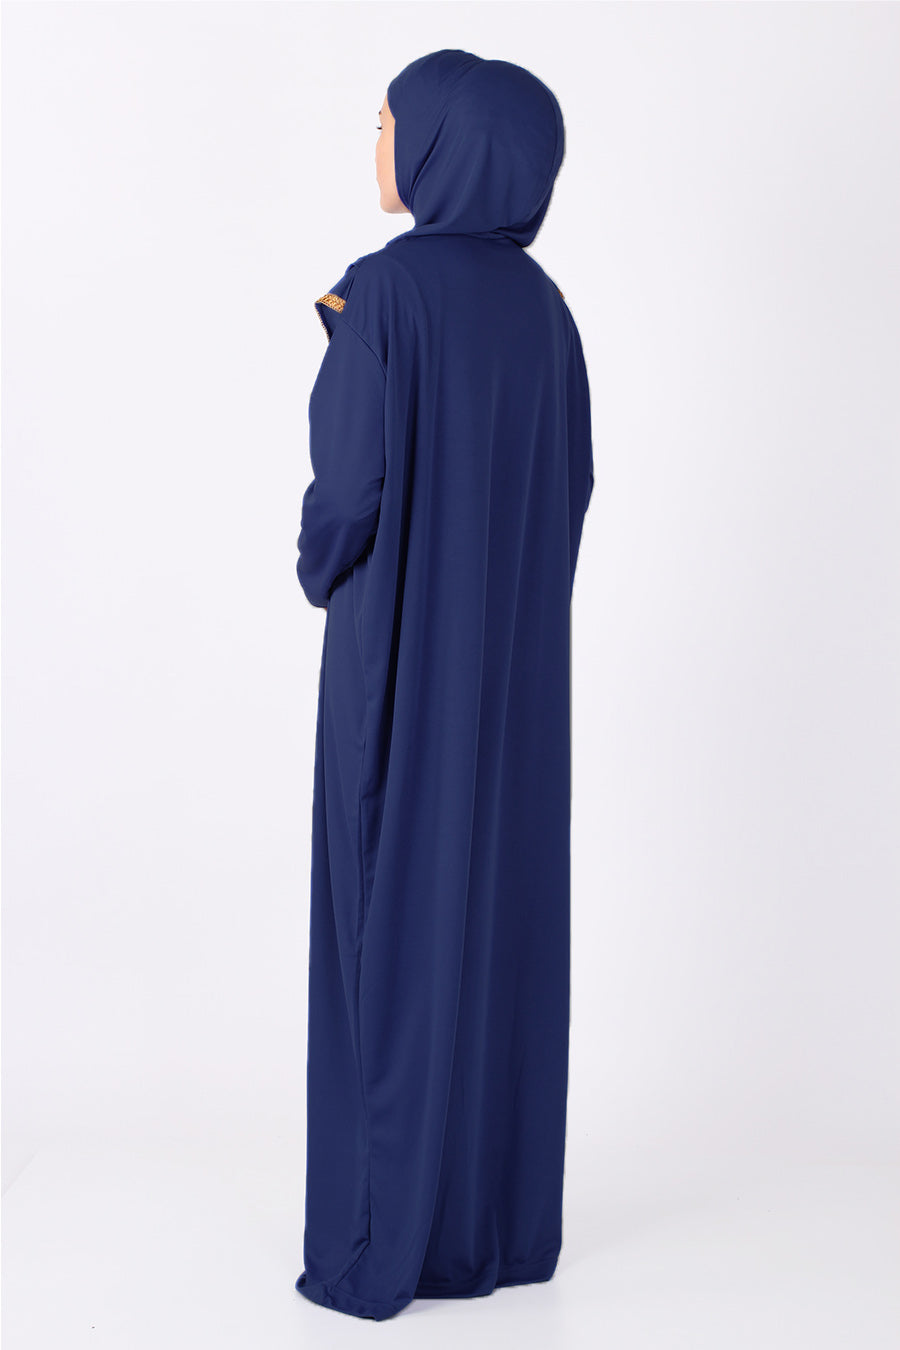 Blue Zipper Turkish Prayer Dress